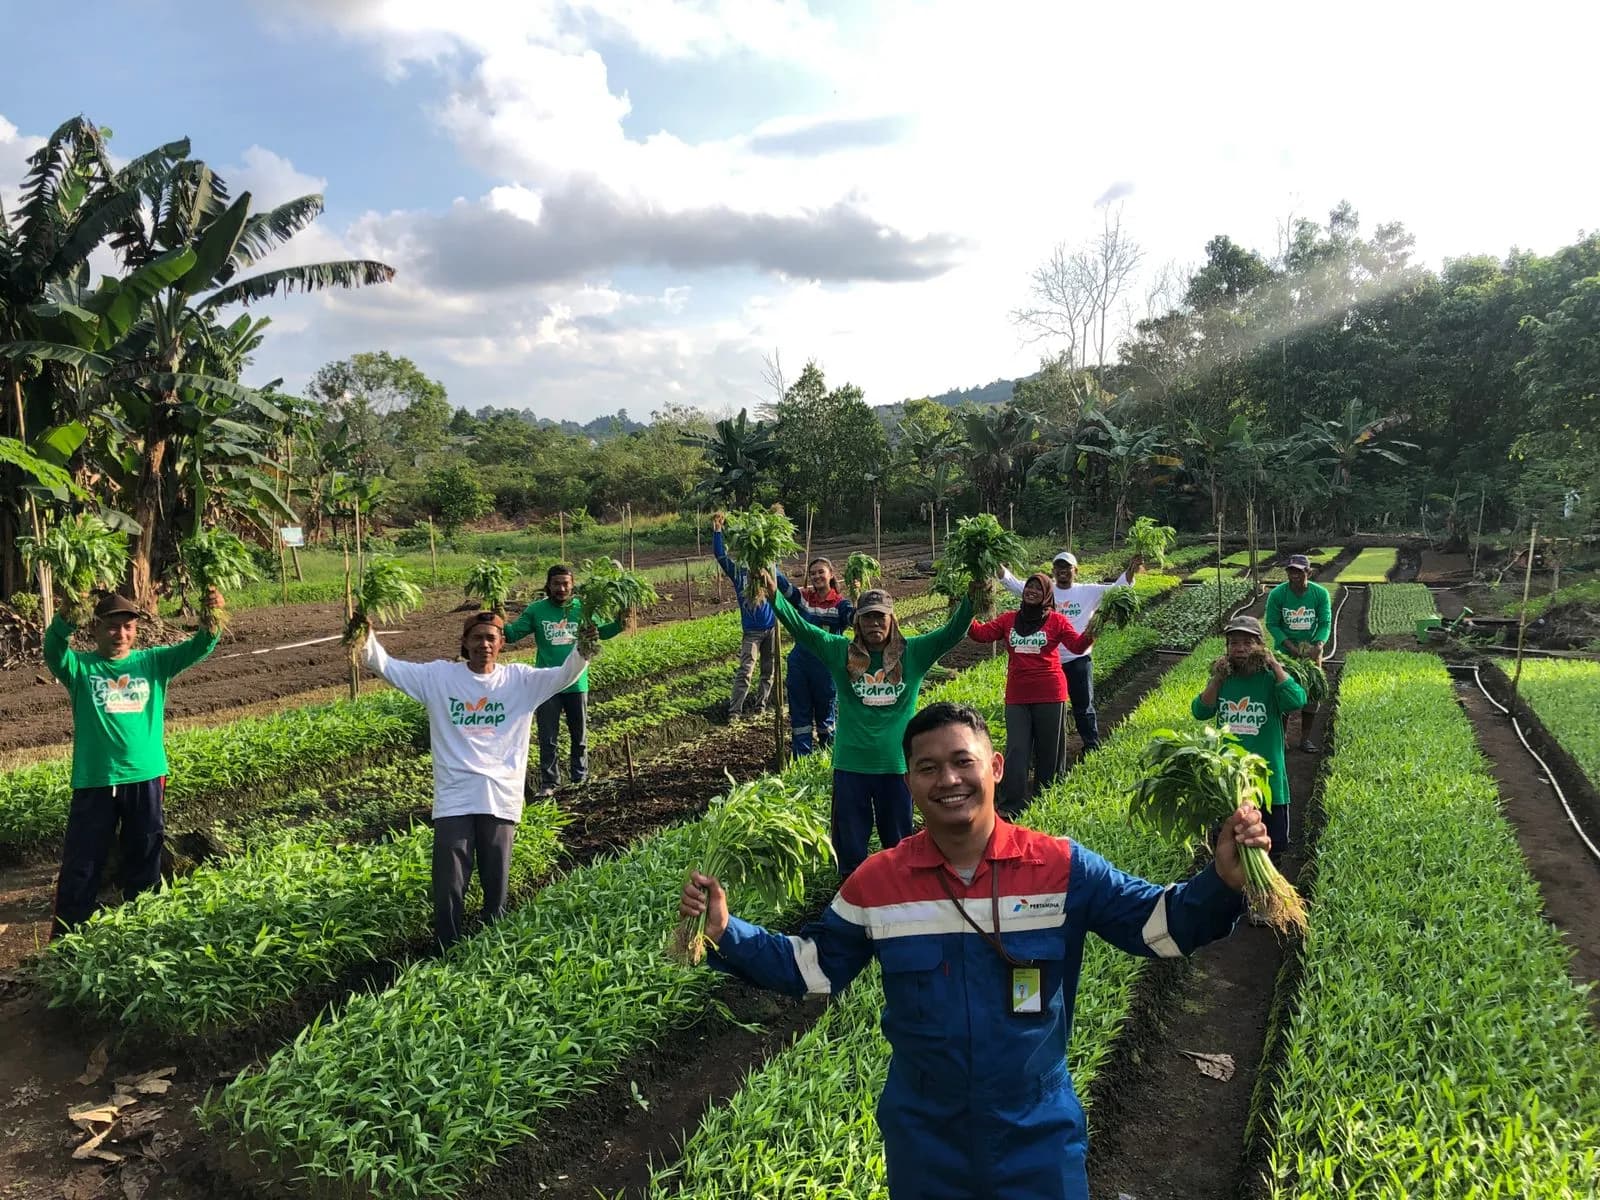 Kiprah Petani Kampung Sidrap, Sukses Garap Lahan Gambut jadi Pertanian Holtikultura Semi Organik